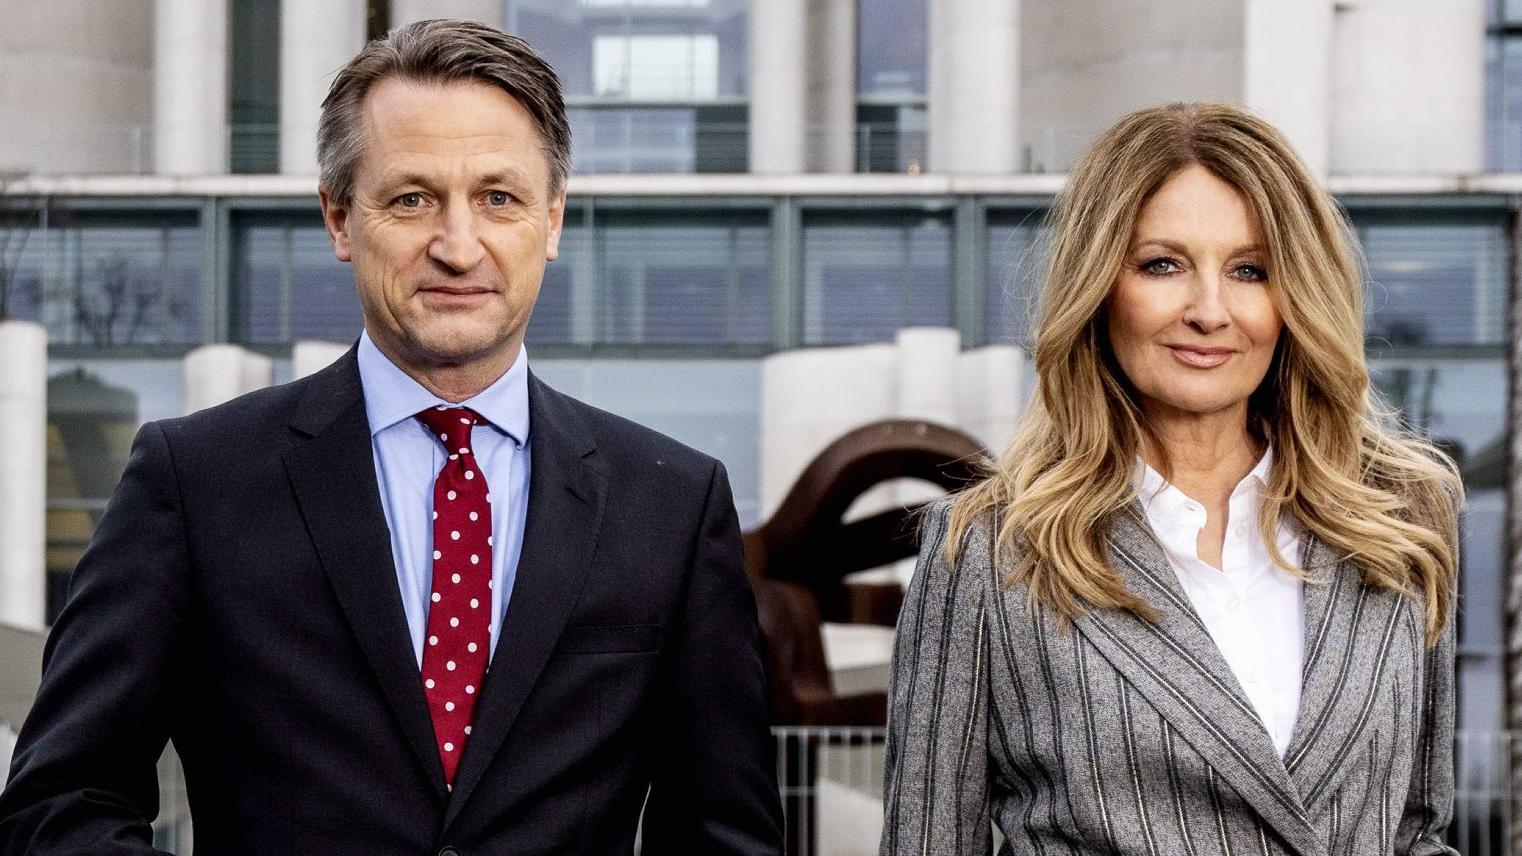 Vor knapp einem Jahr interviewten RTL-Politik-Chef Nikolaus Blome und  RTL-Moderatorin Frauke Ludowig gemeinsam Angela Merkel. Nun ist das Duo wieder zusammen im Einsatz.